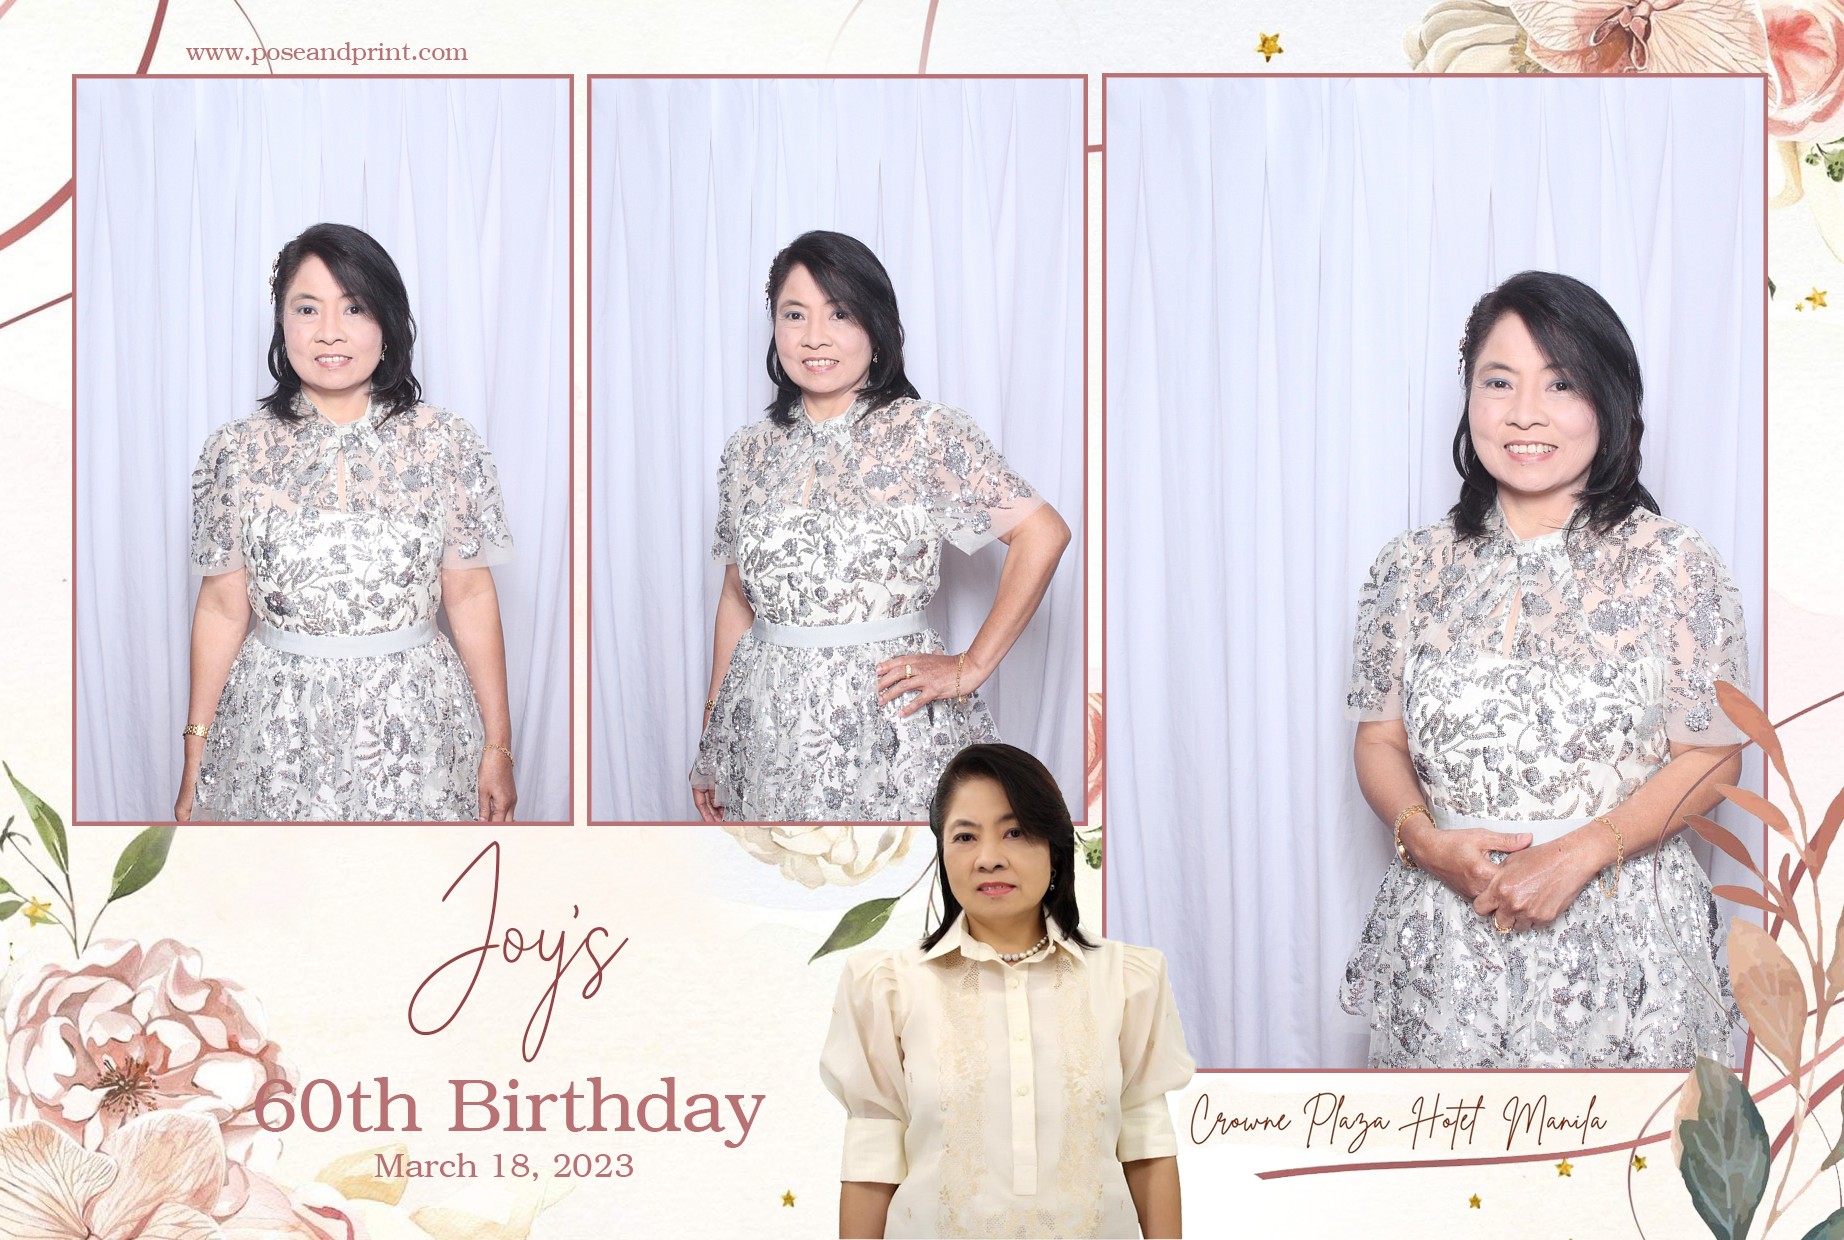 Joy's 60th Birthday - Mirror Booth